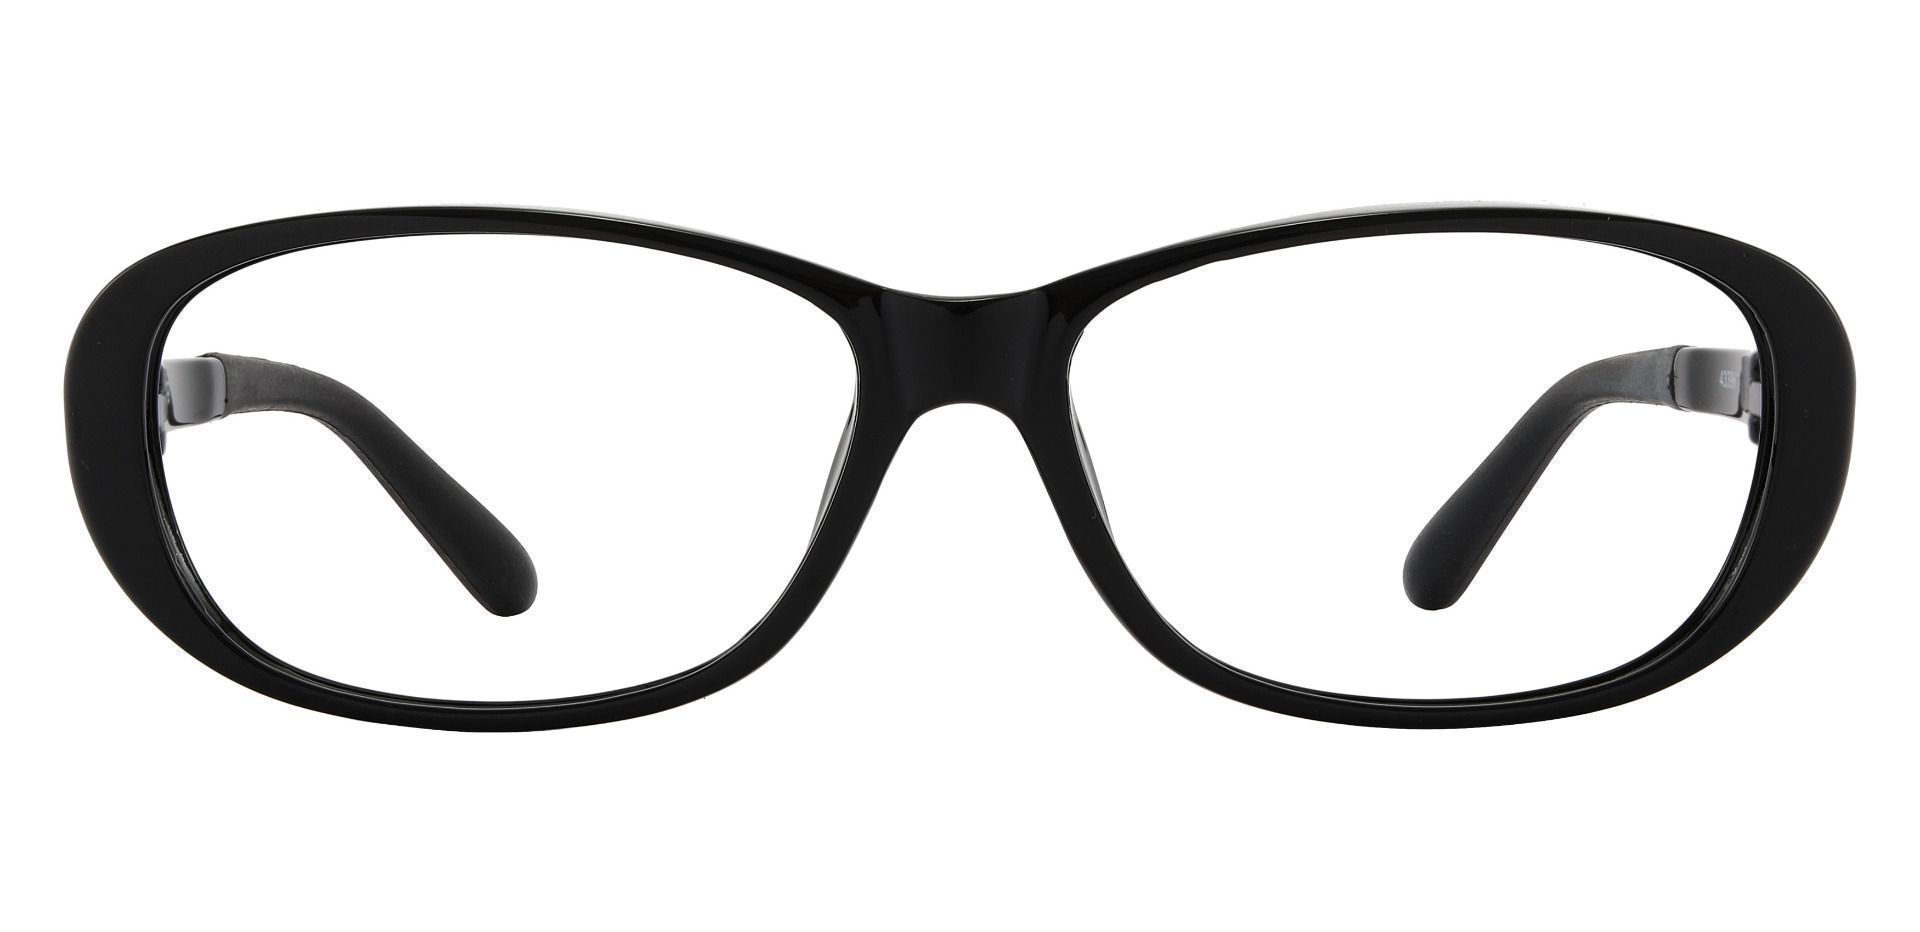 Rosario Sports Goggles Prescription Glasses - Black